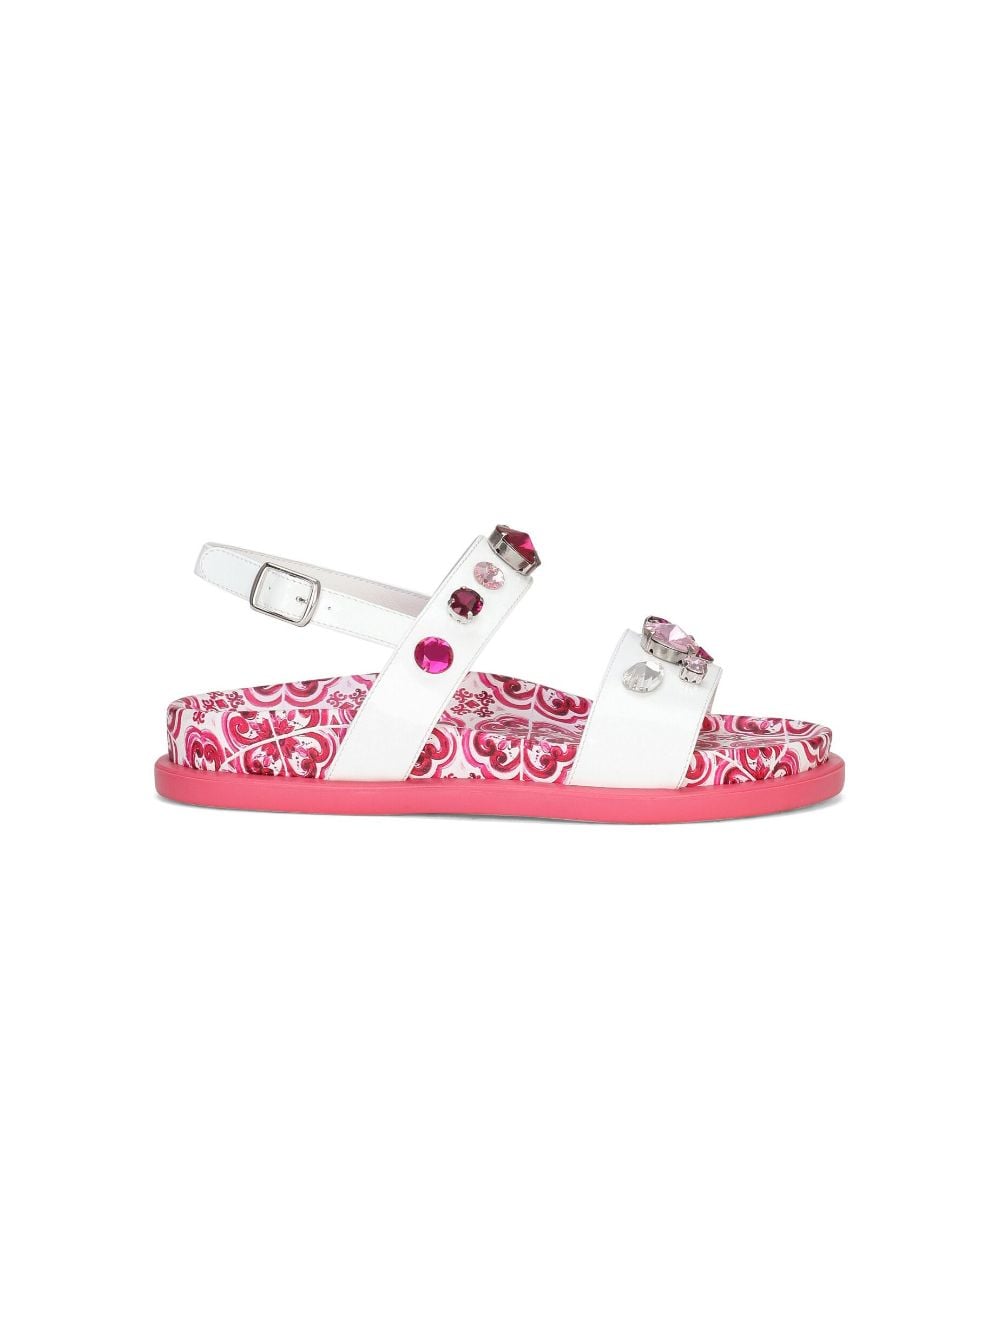 Sandalo bianco e rosa bambina con applicazioni e stampa maiolica